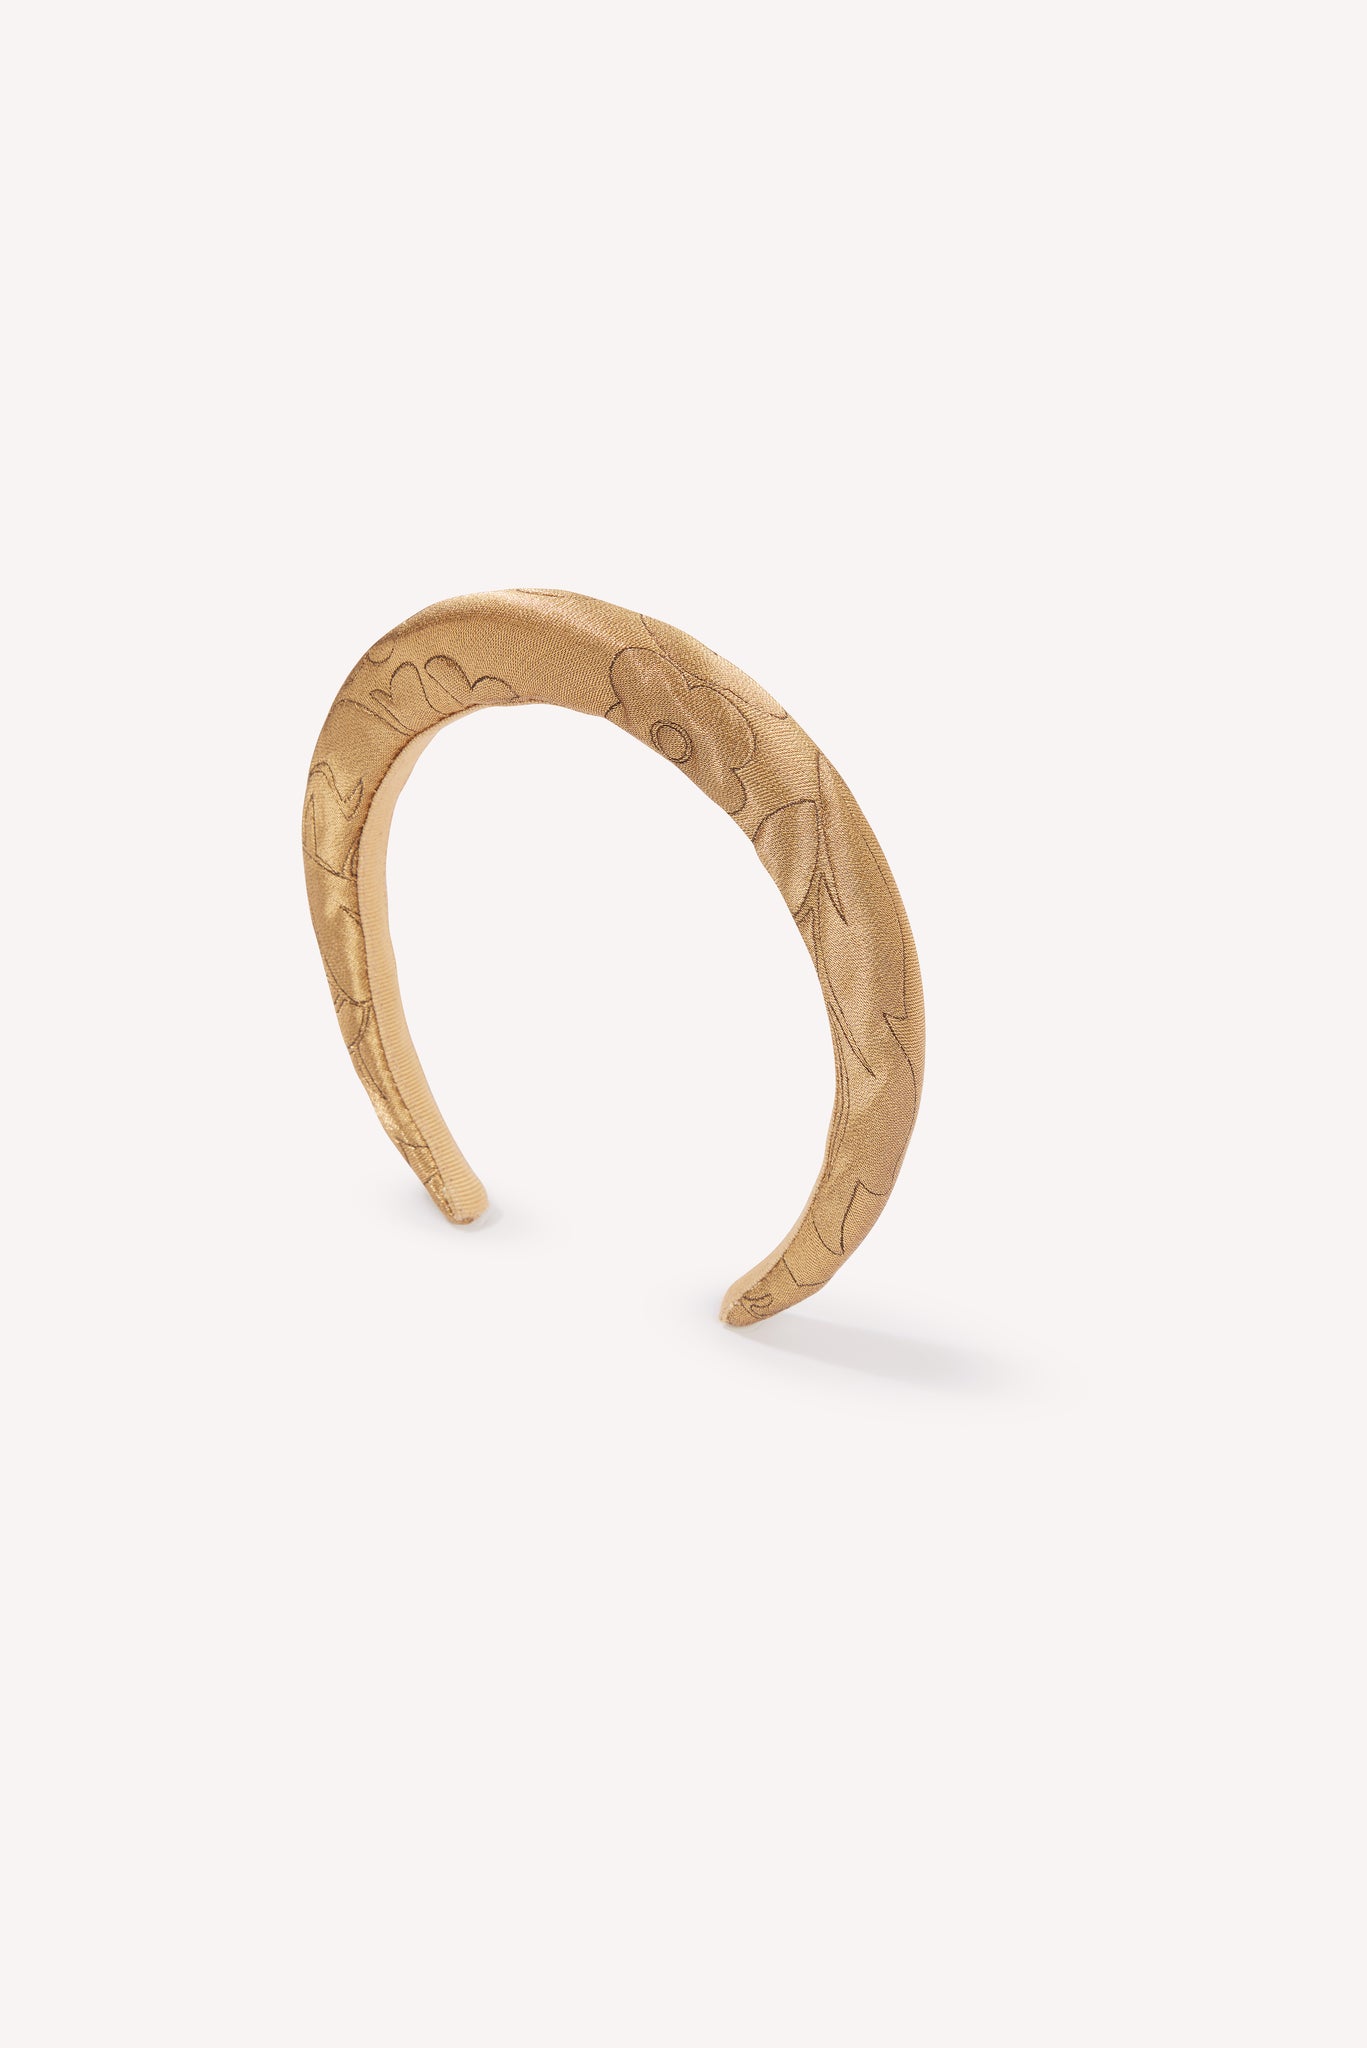 Blenheim Headband in Gold Lurex Metallic Jacquard | Emilia Wickstead